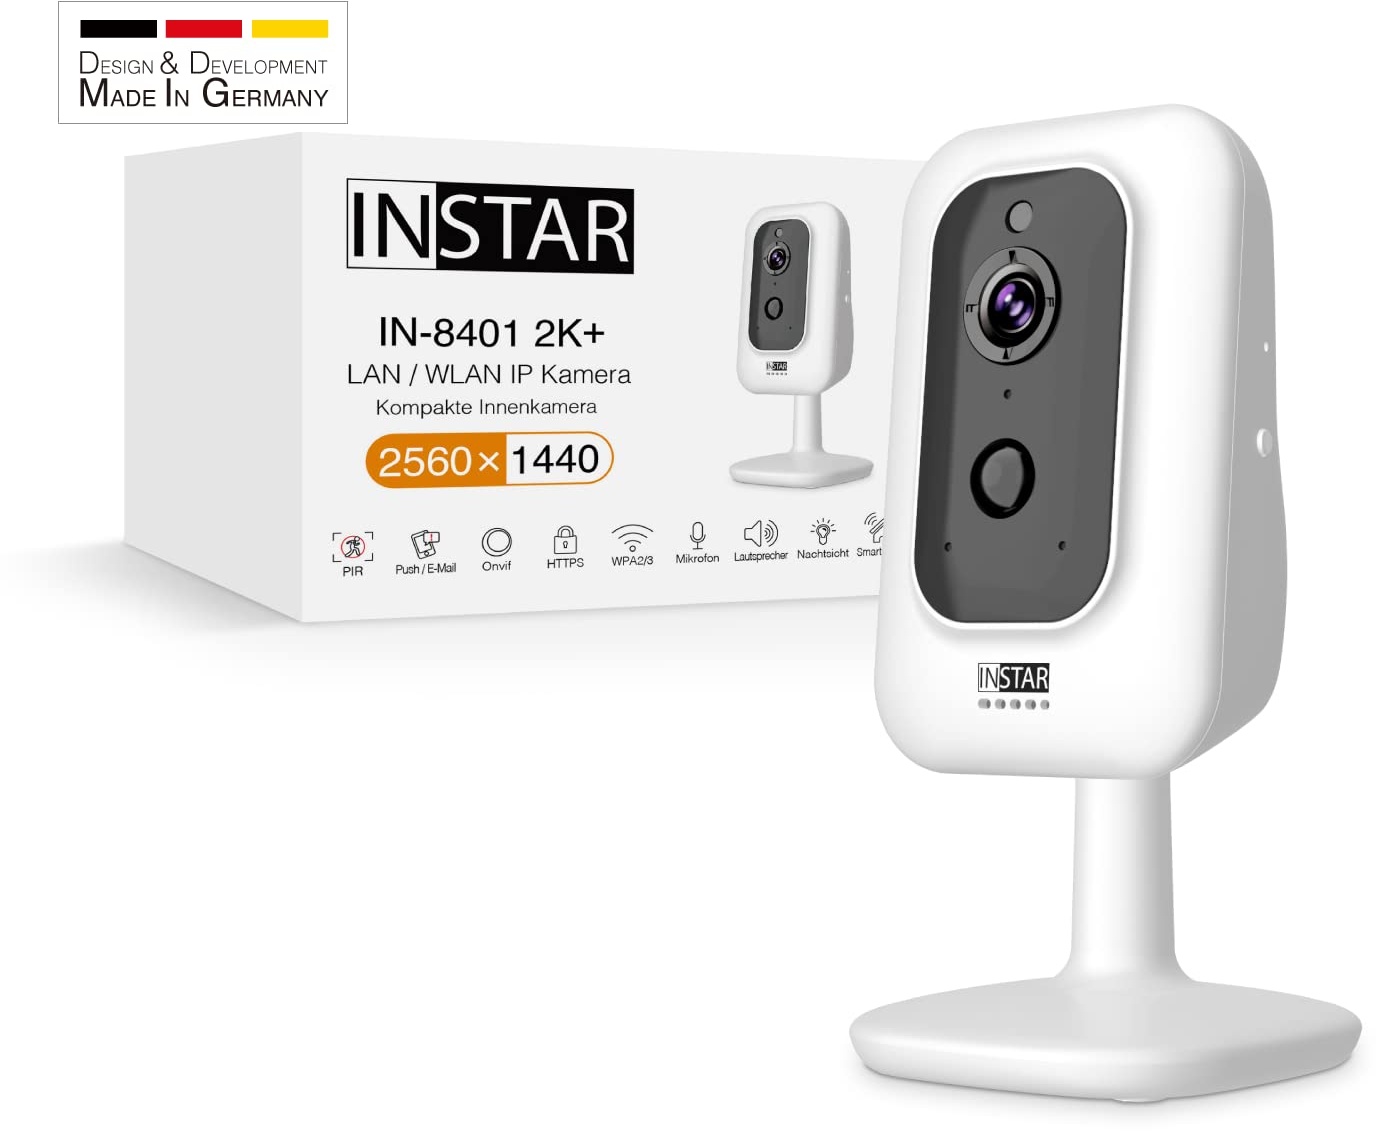 INSTAR IN-8401 2K+ Weiss - LAN/WLAN Überwachungskamera mit KI (AI) - IP Kamera - WPA3-2,4 und 5Ghz WiFi - 2-Wege Audio - PIR - Wärmesensor - Nachtsicht - 940nm unsichtbare LEDs - HomeKit - MQTT